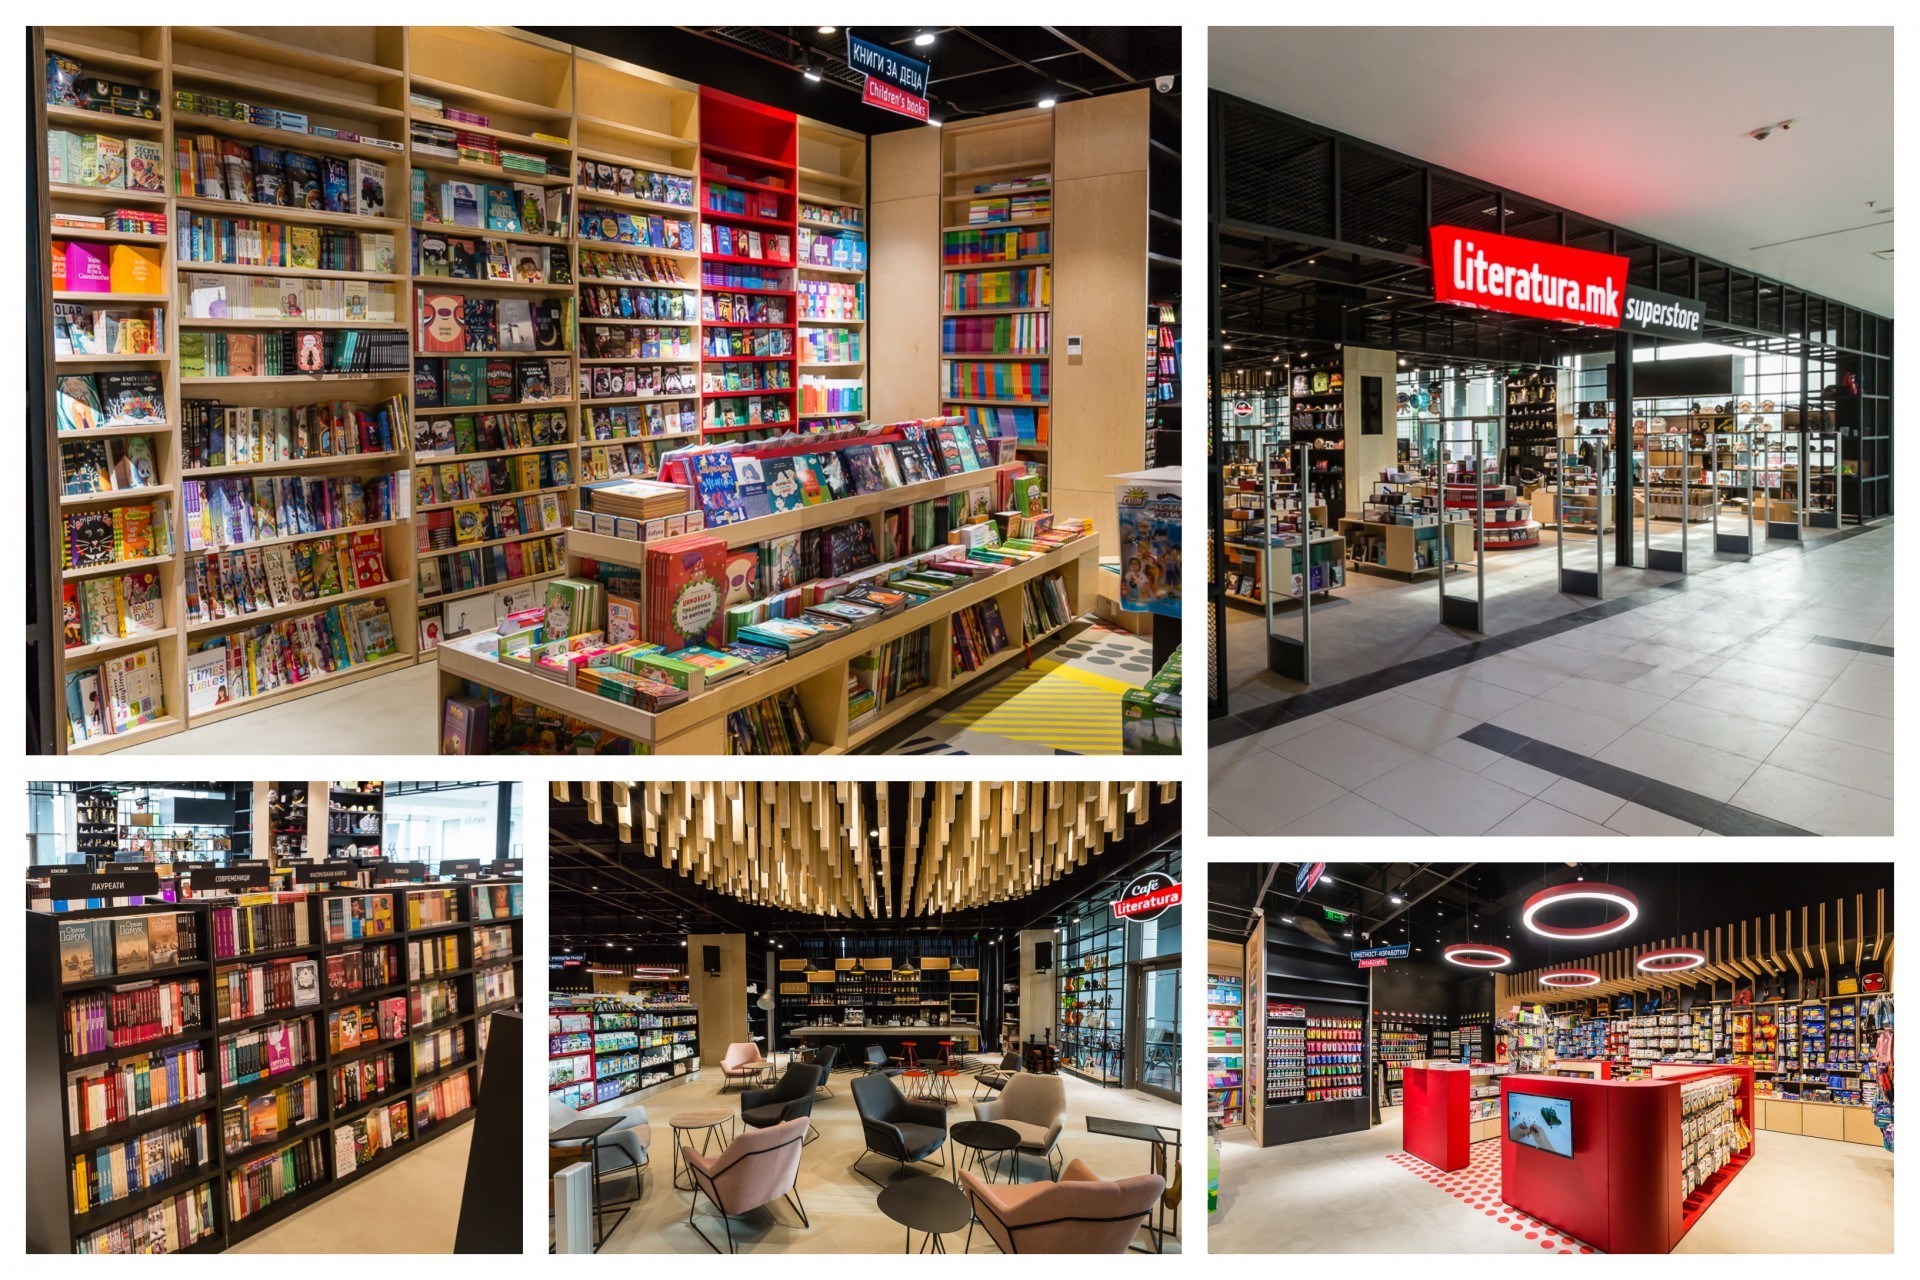 Свечено отворање на новата книжарница на „Литература.мк“ во „Скопје сити мол“ – Literatura.mk Superstore